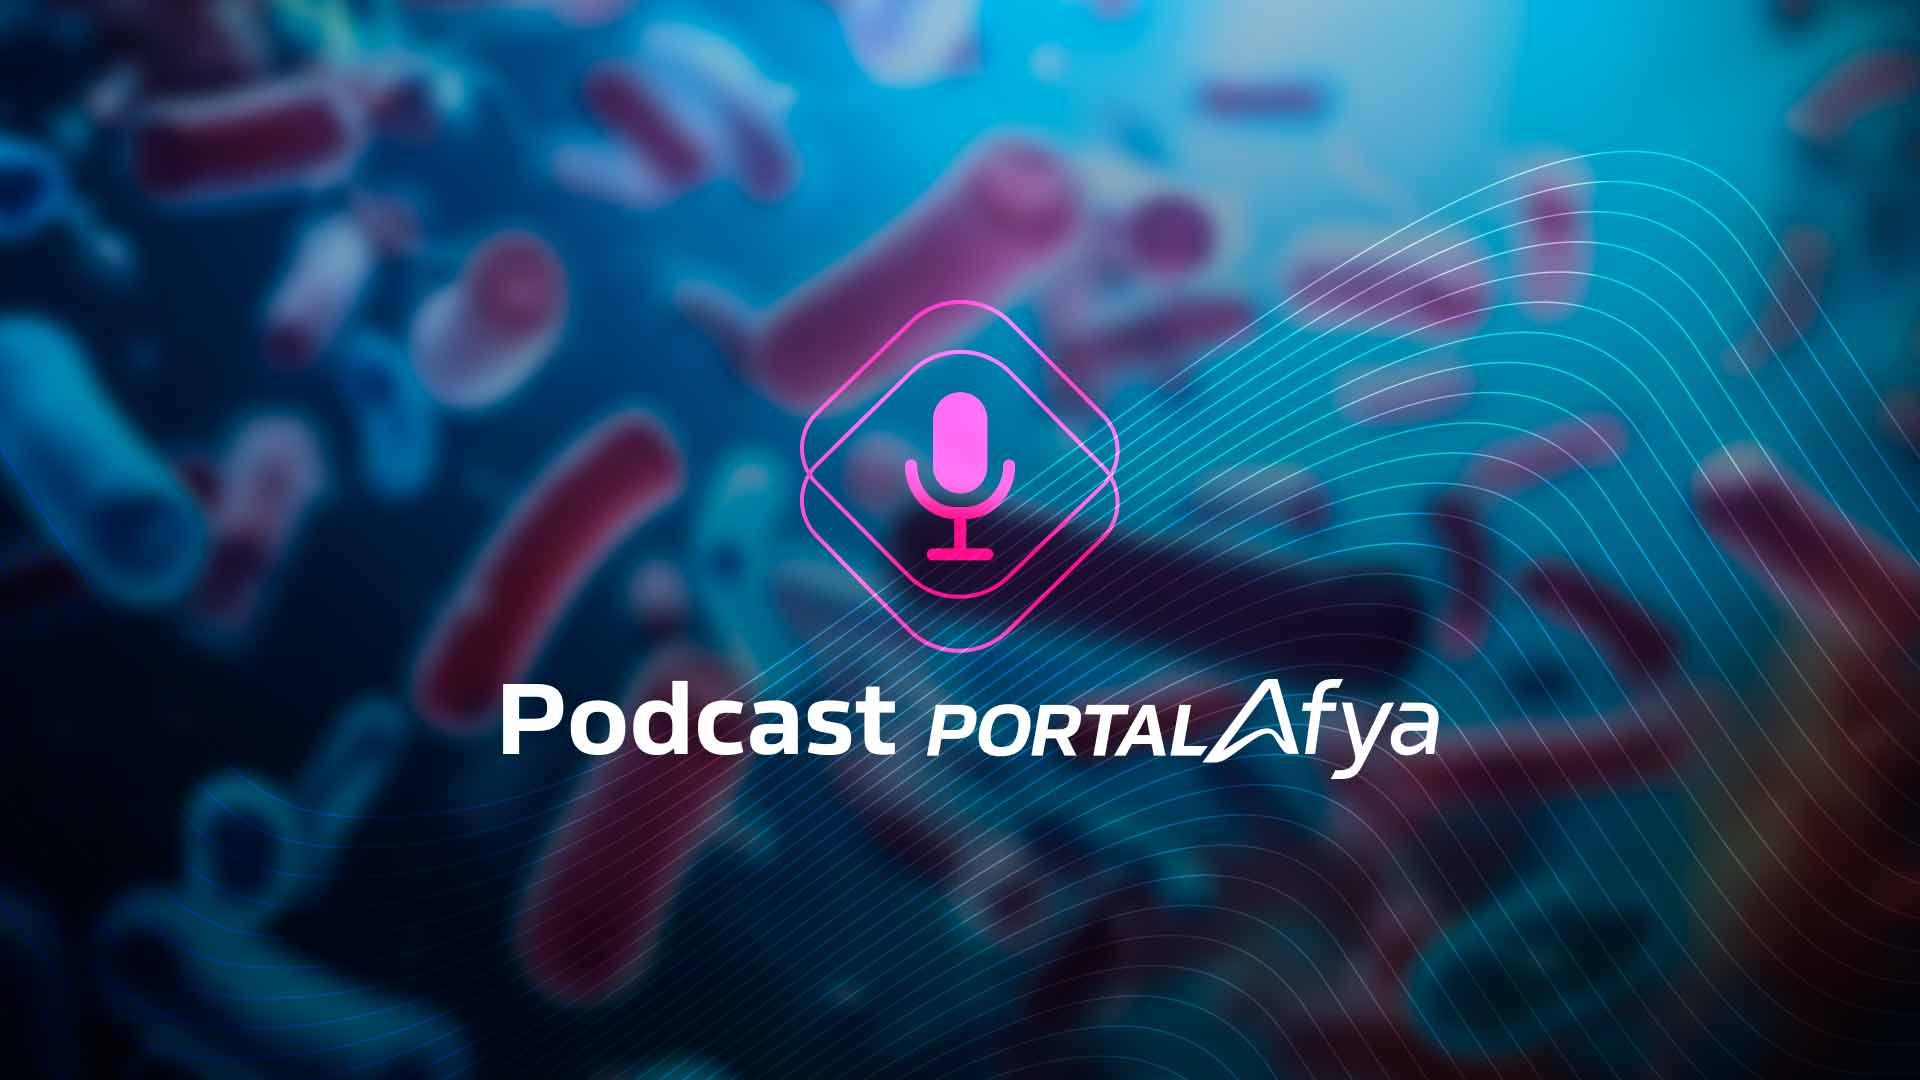 Podcast #108: Profilaxia pós-exposição sexual de risco